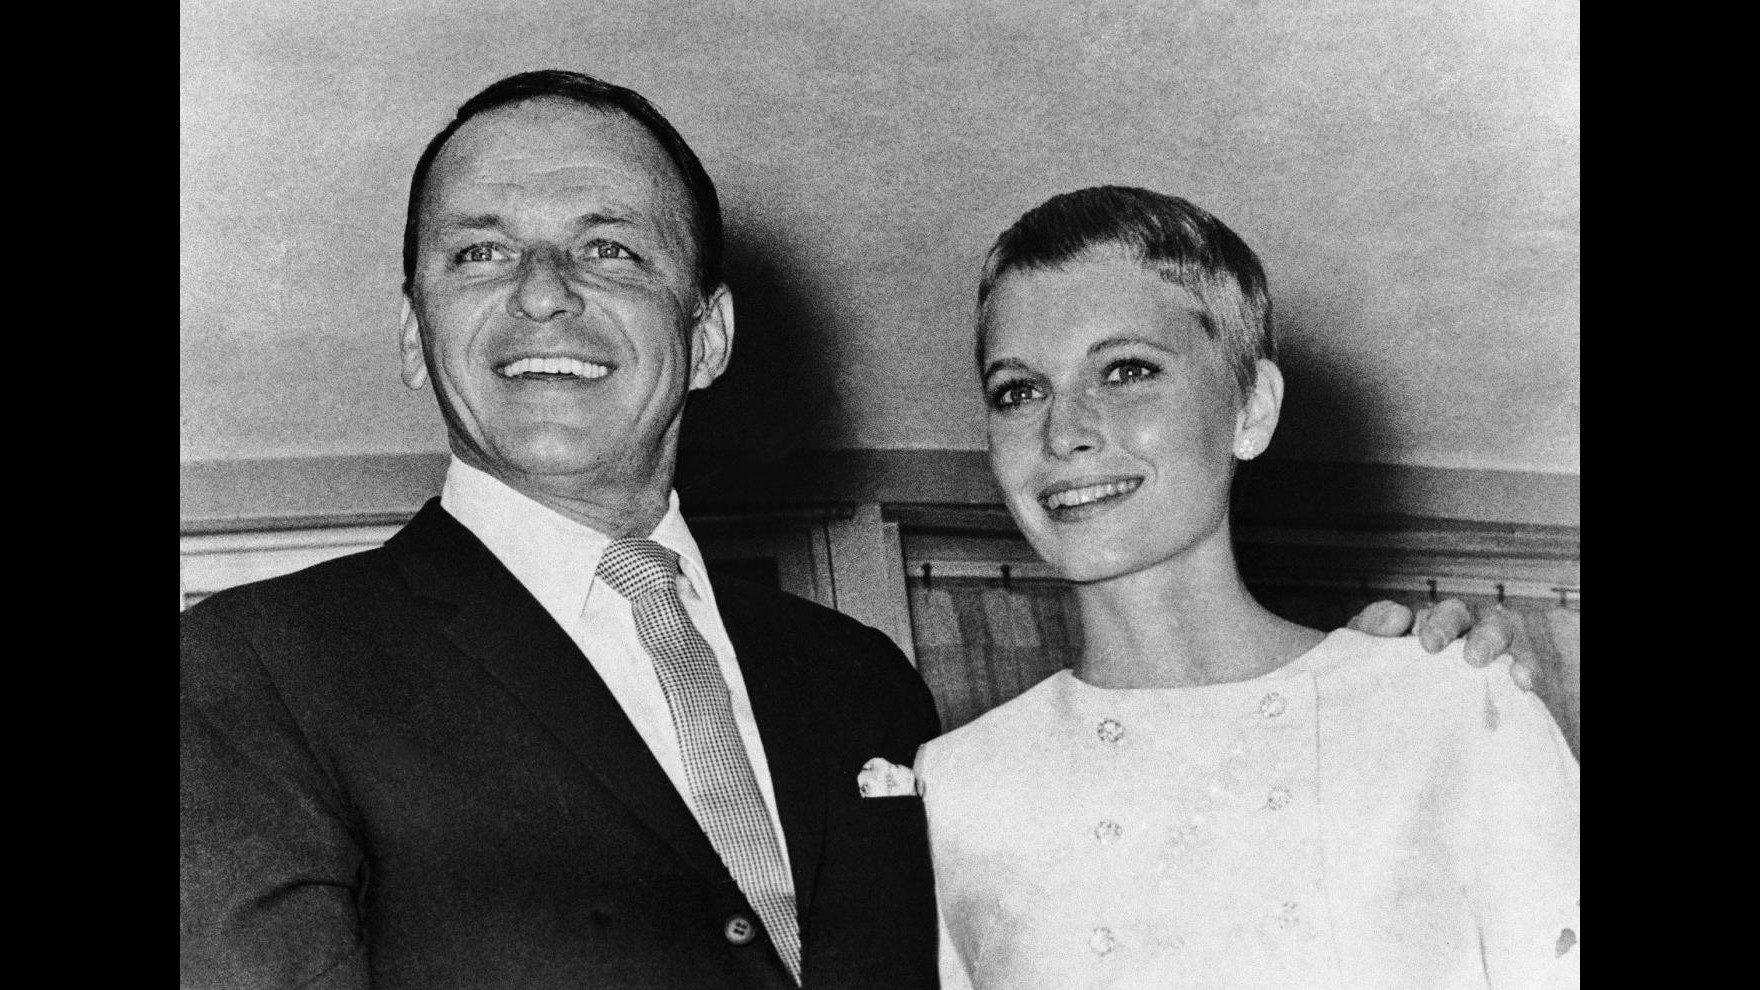 Mia Farrow, confessione shock: Mio figlio è di Sinatra non di Woody Allen